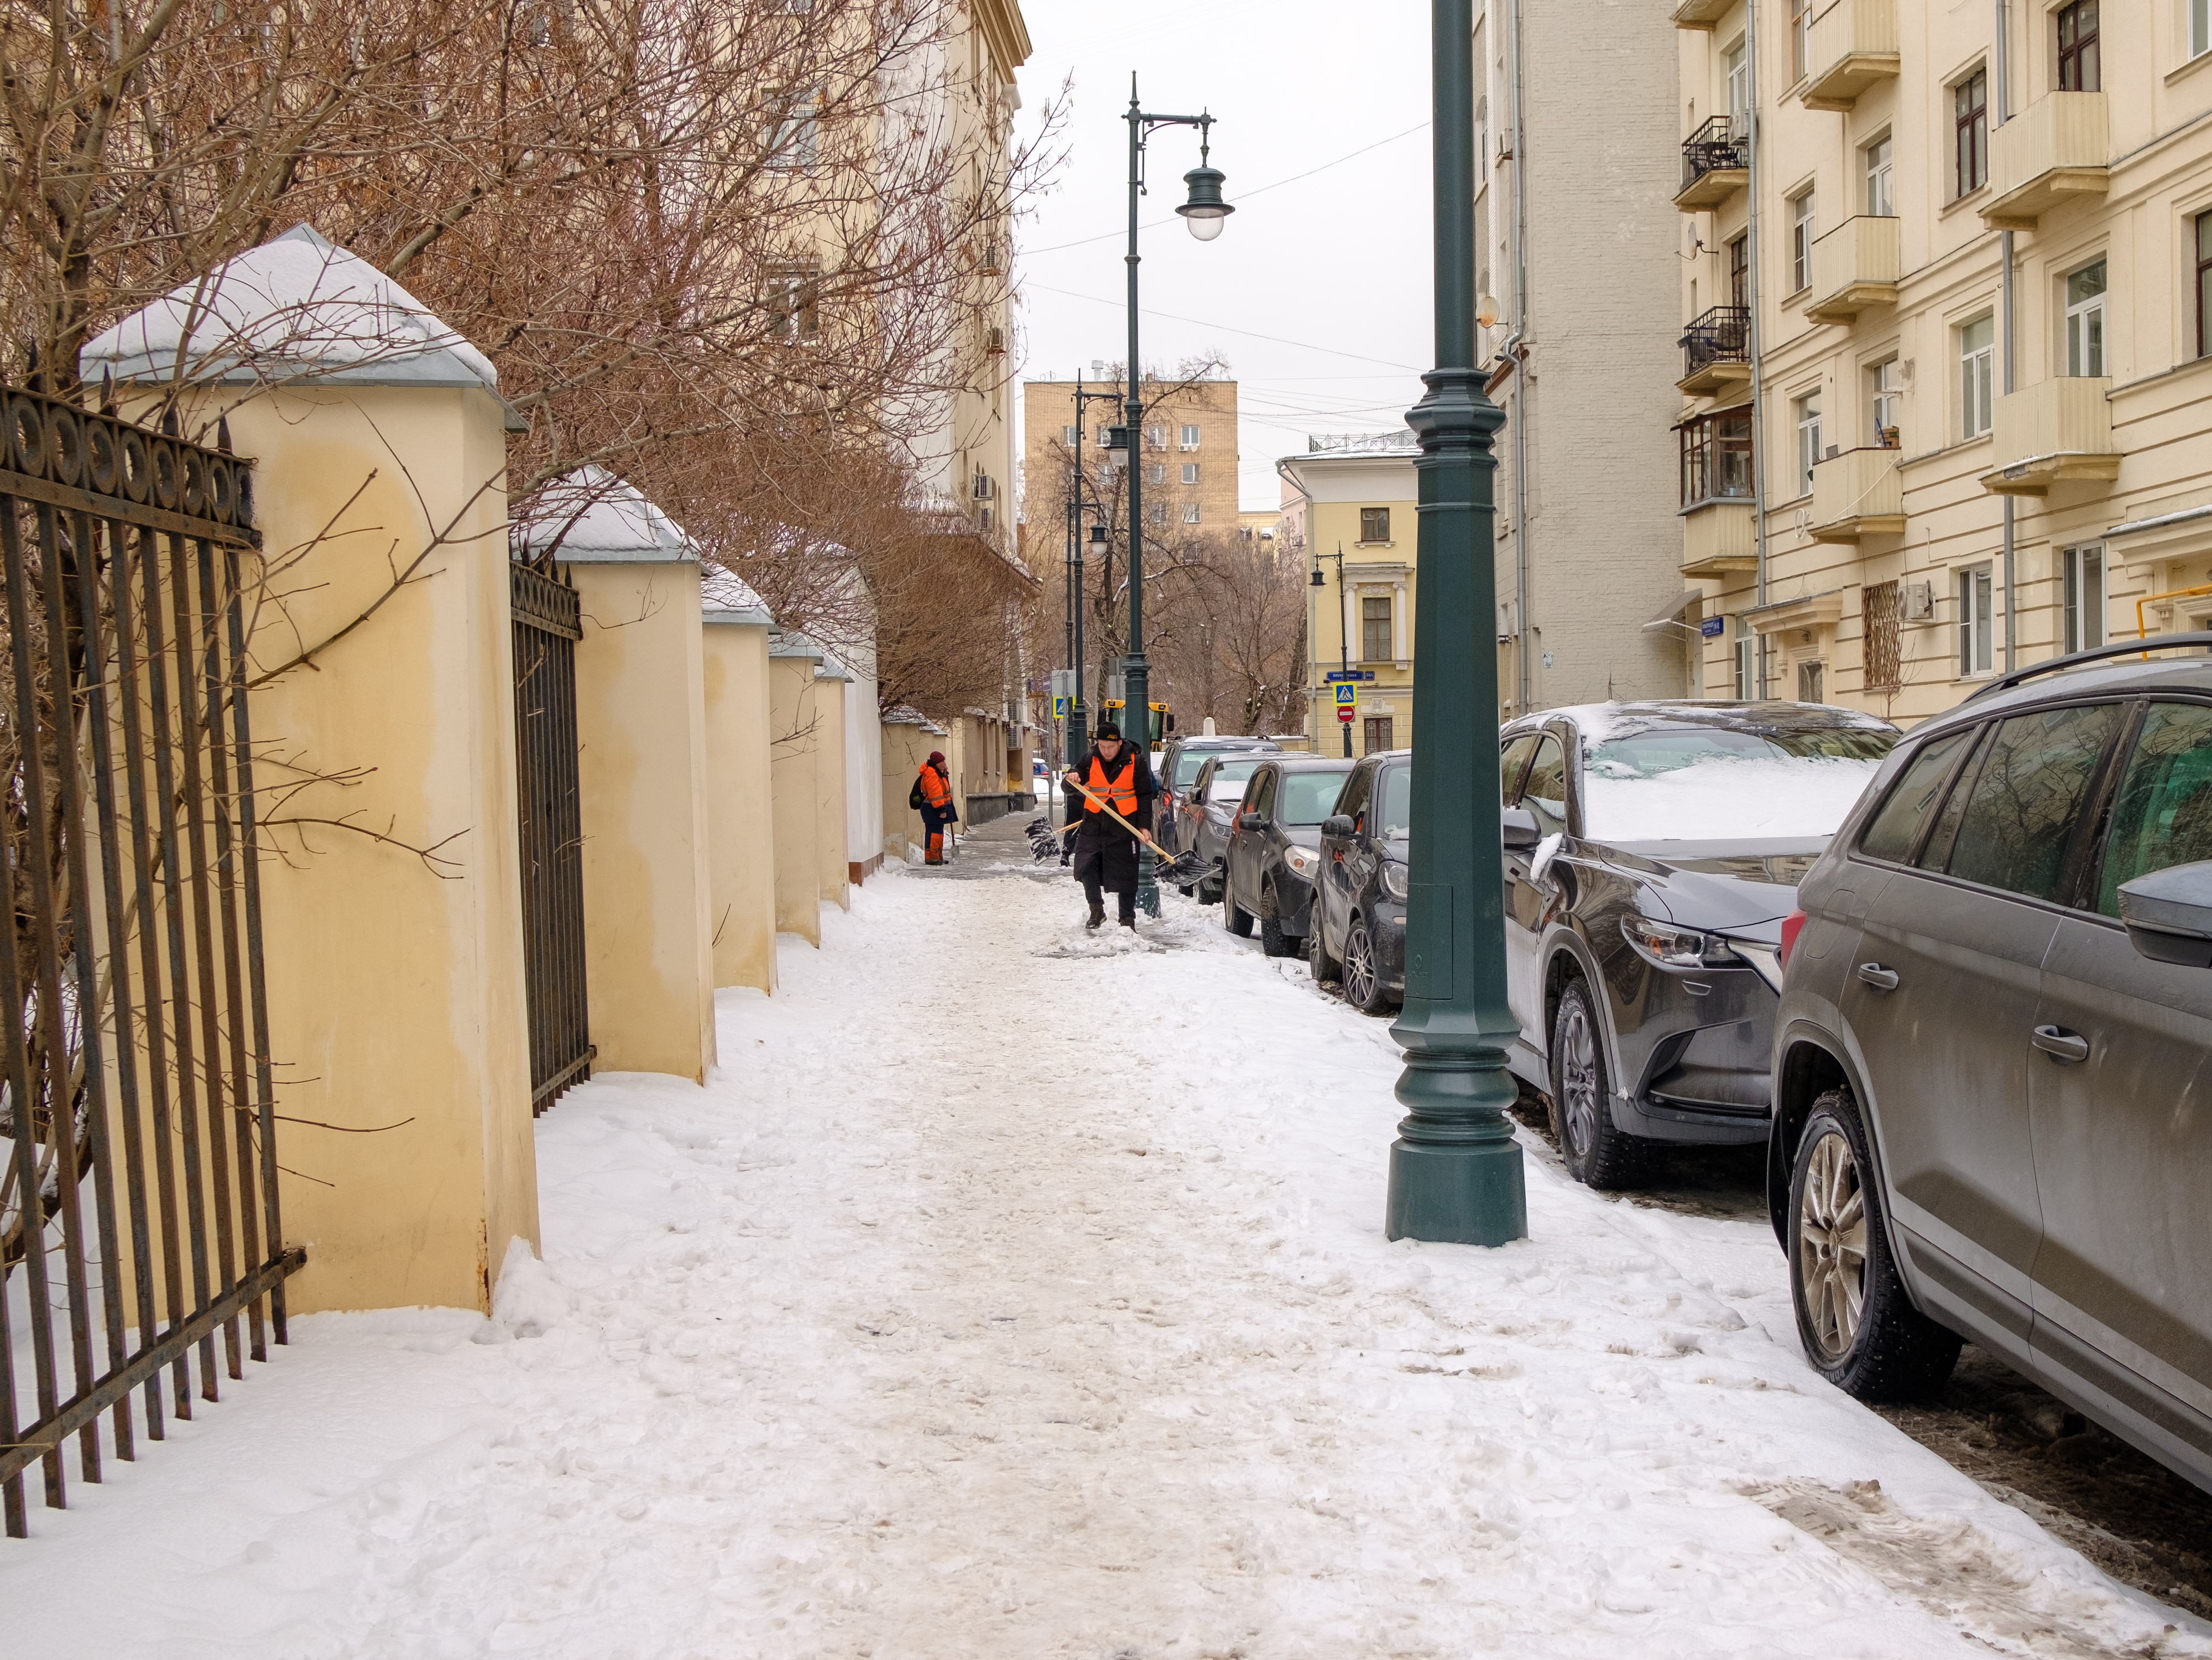 A snowy street scene